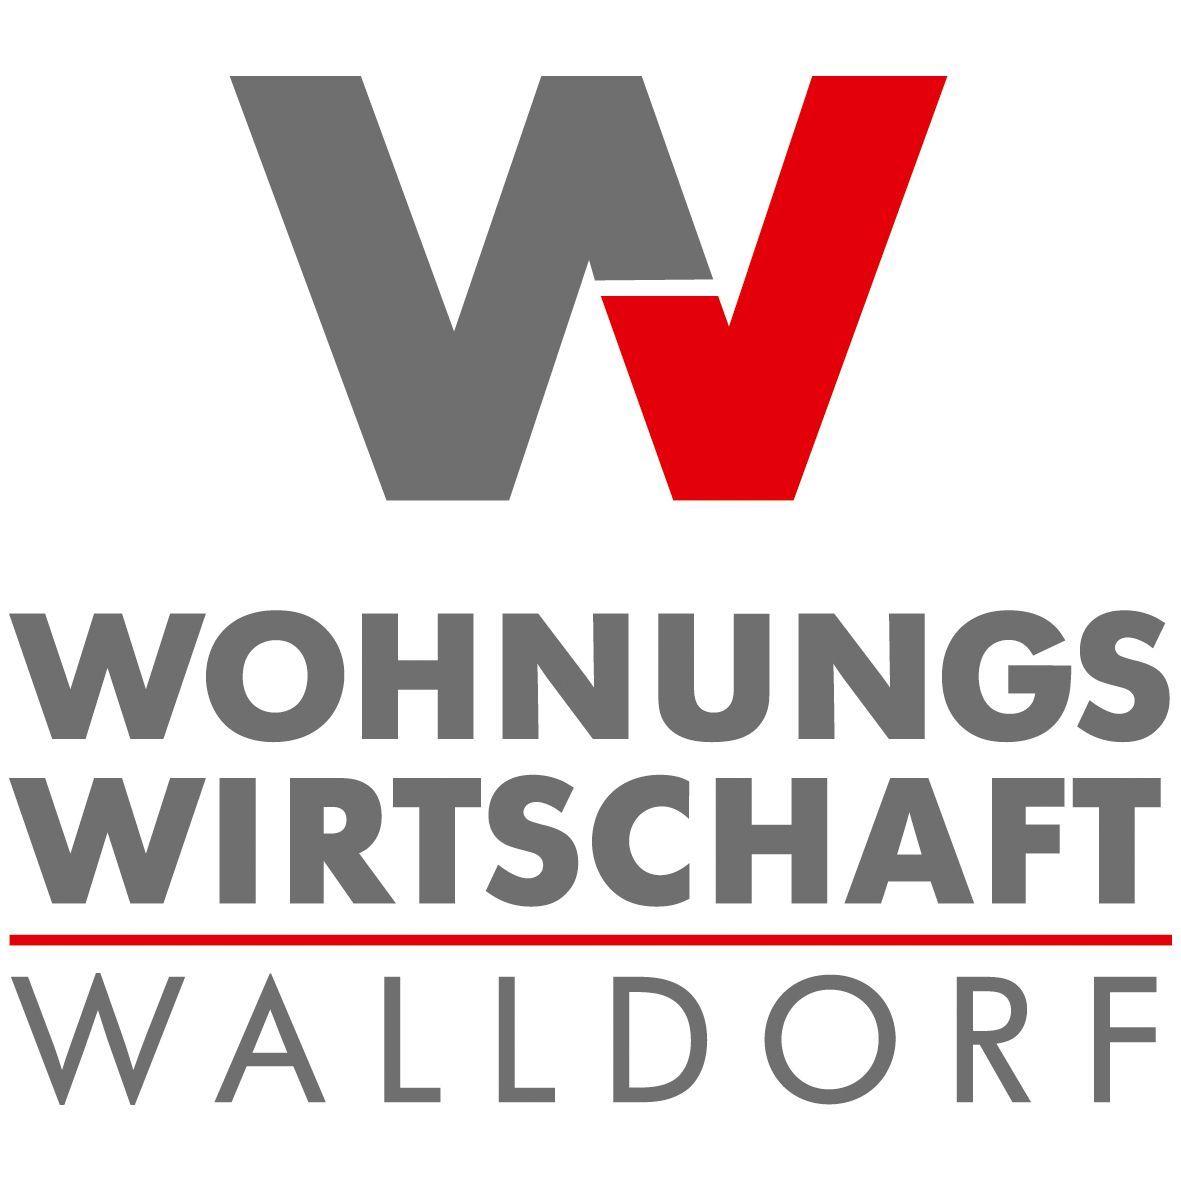 Wohnungswirtschaft Walldorf zieht um